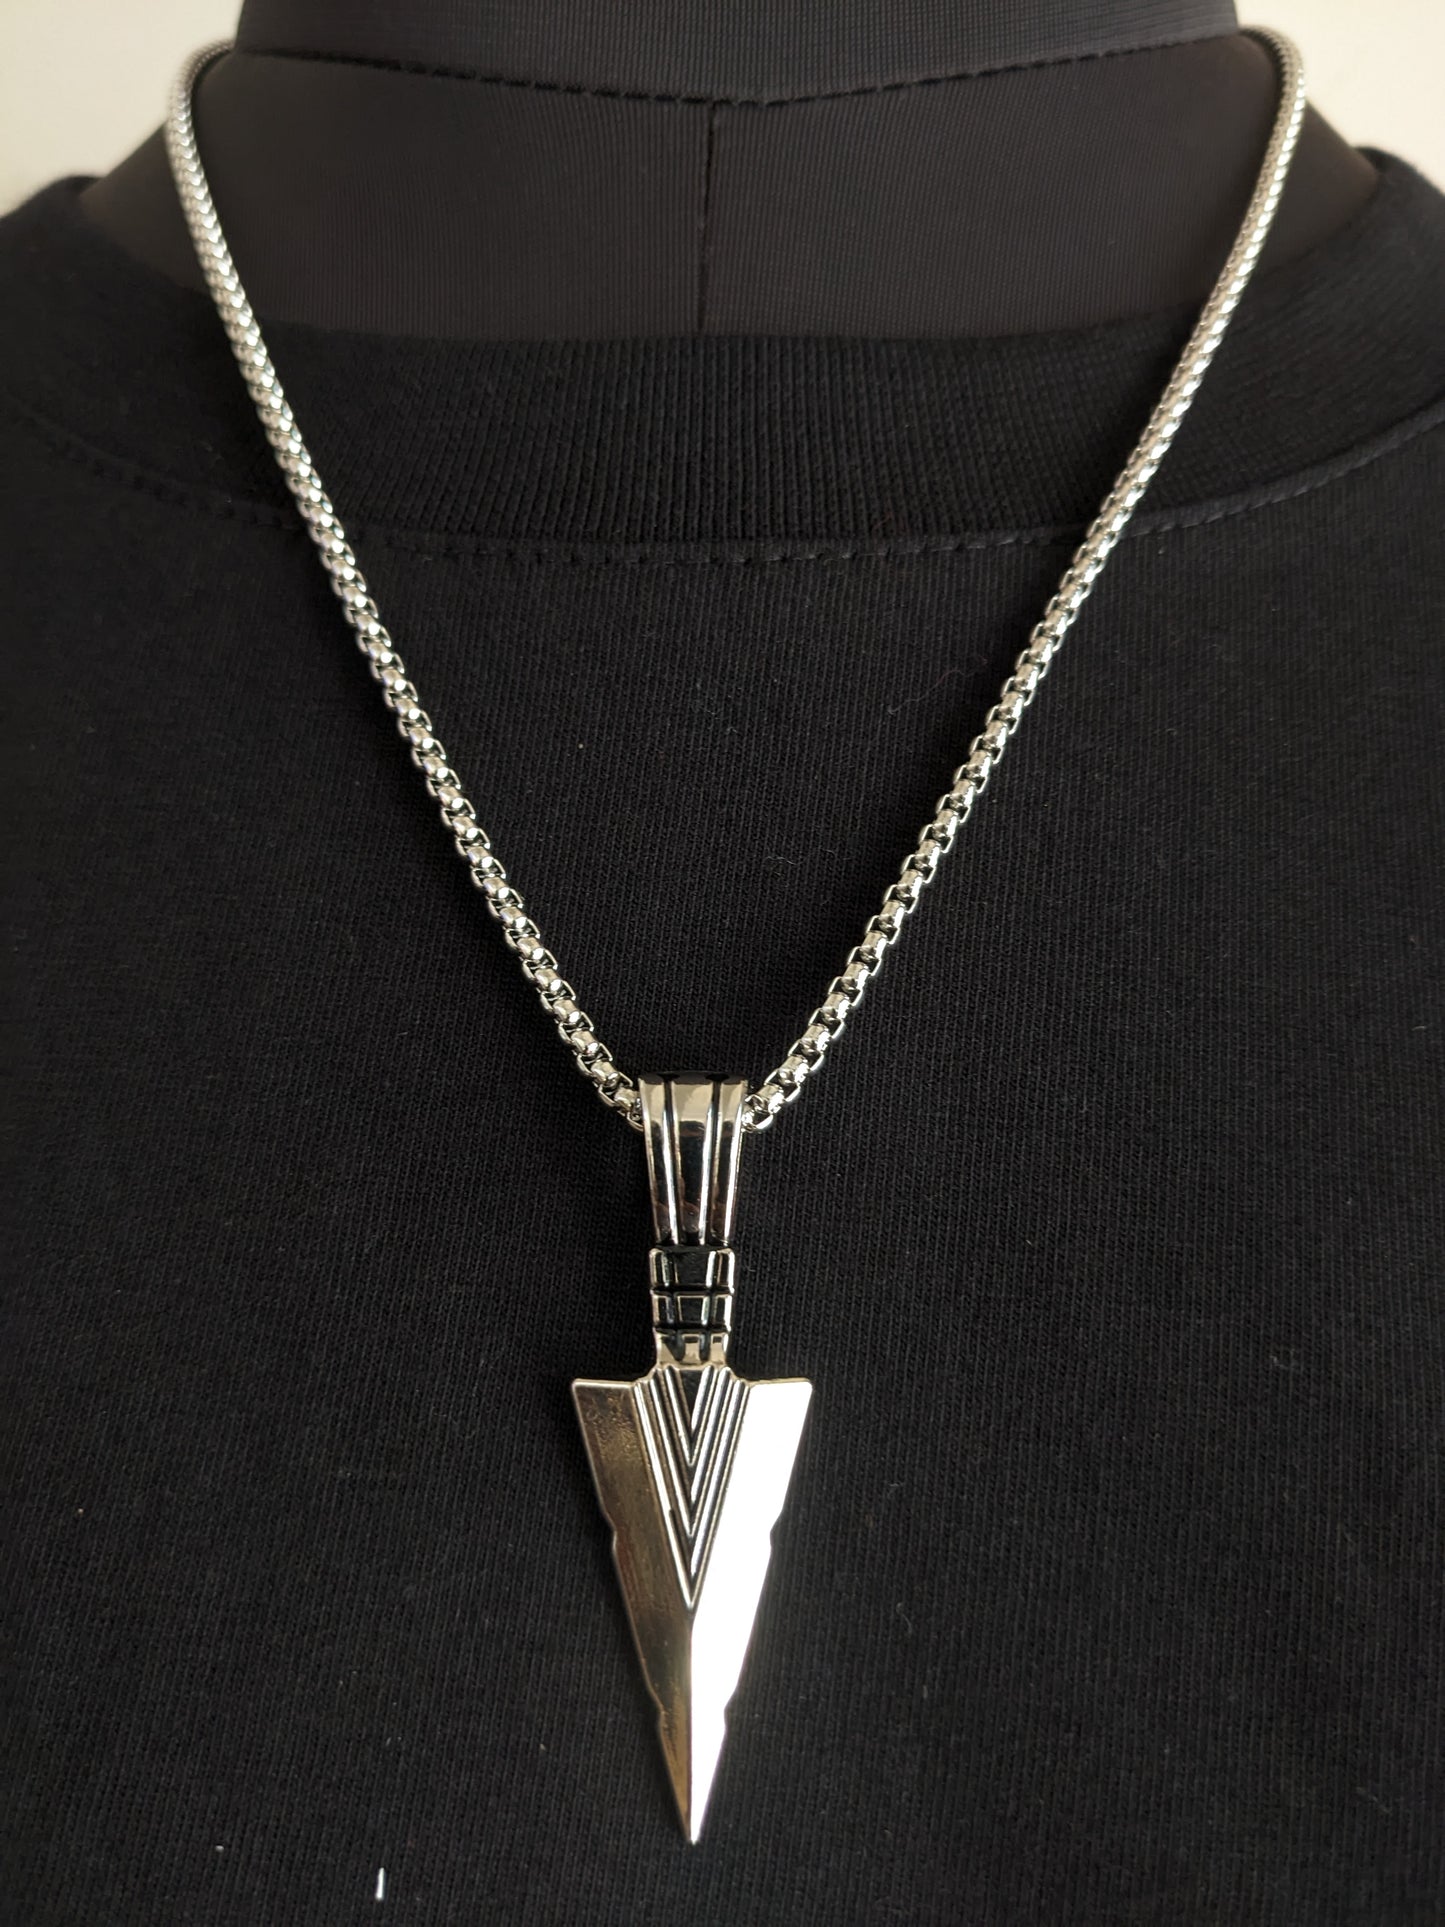 Arrowhead Pendant with Chain